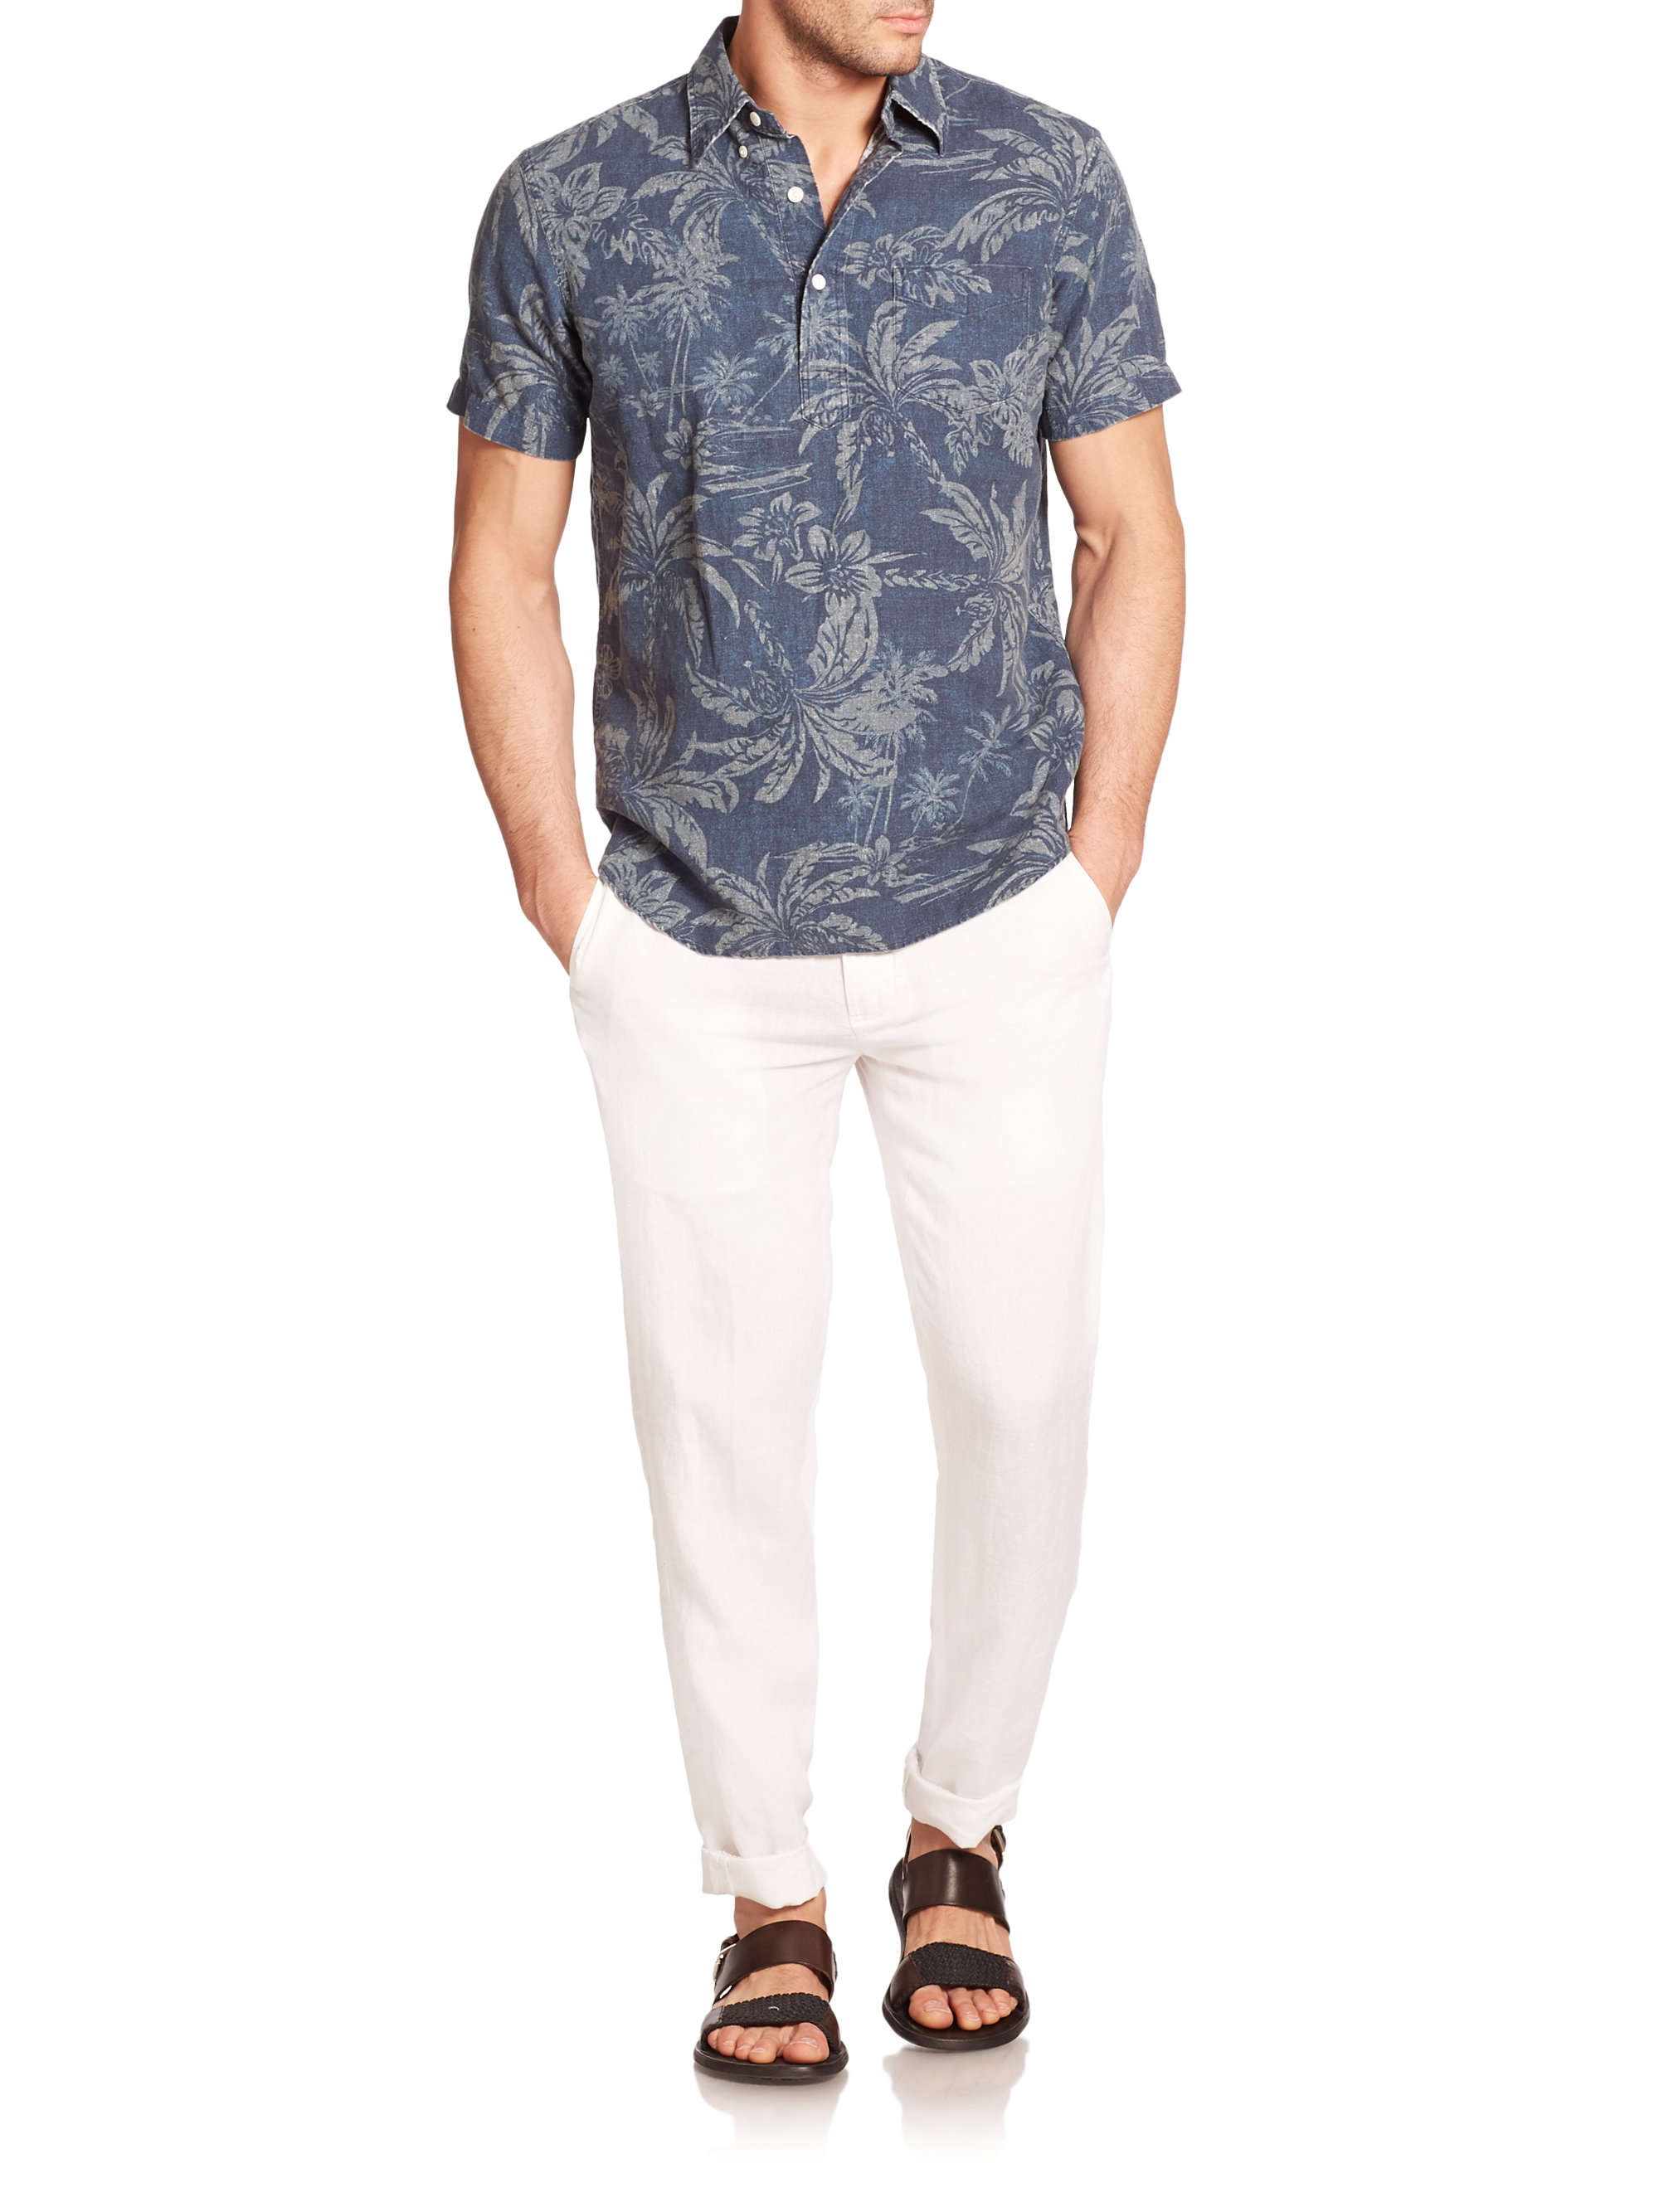 Lyst - Polo Ralph Lauren Short-sleeved Hawaiian-print Shirt in Blue for Men